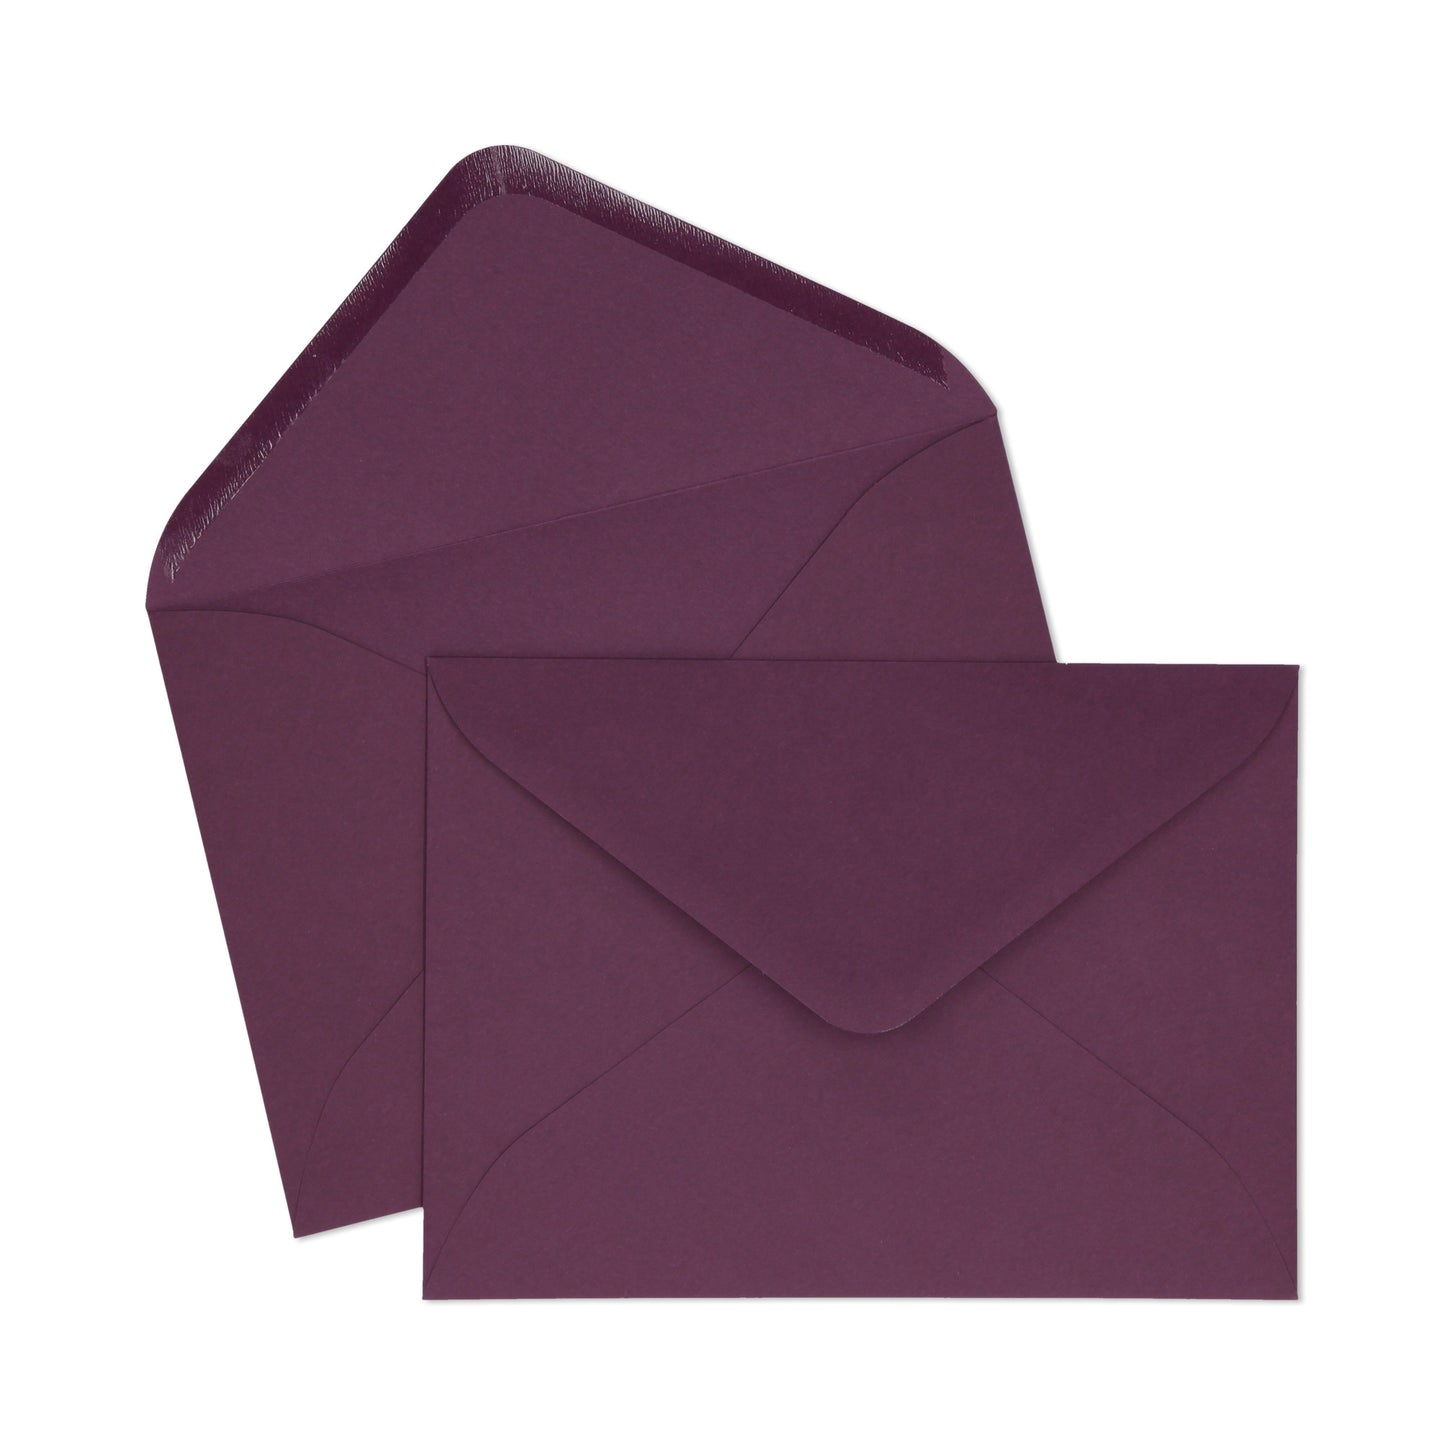 Violet Purple C5 Envelope - 10 units